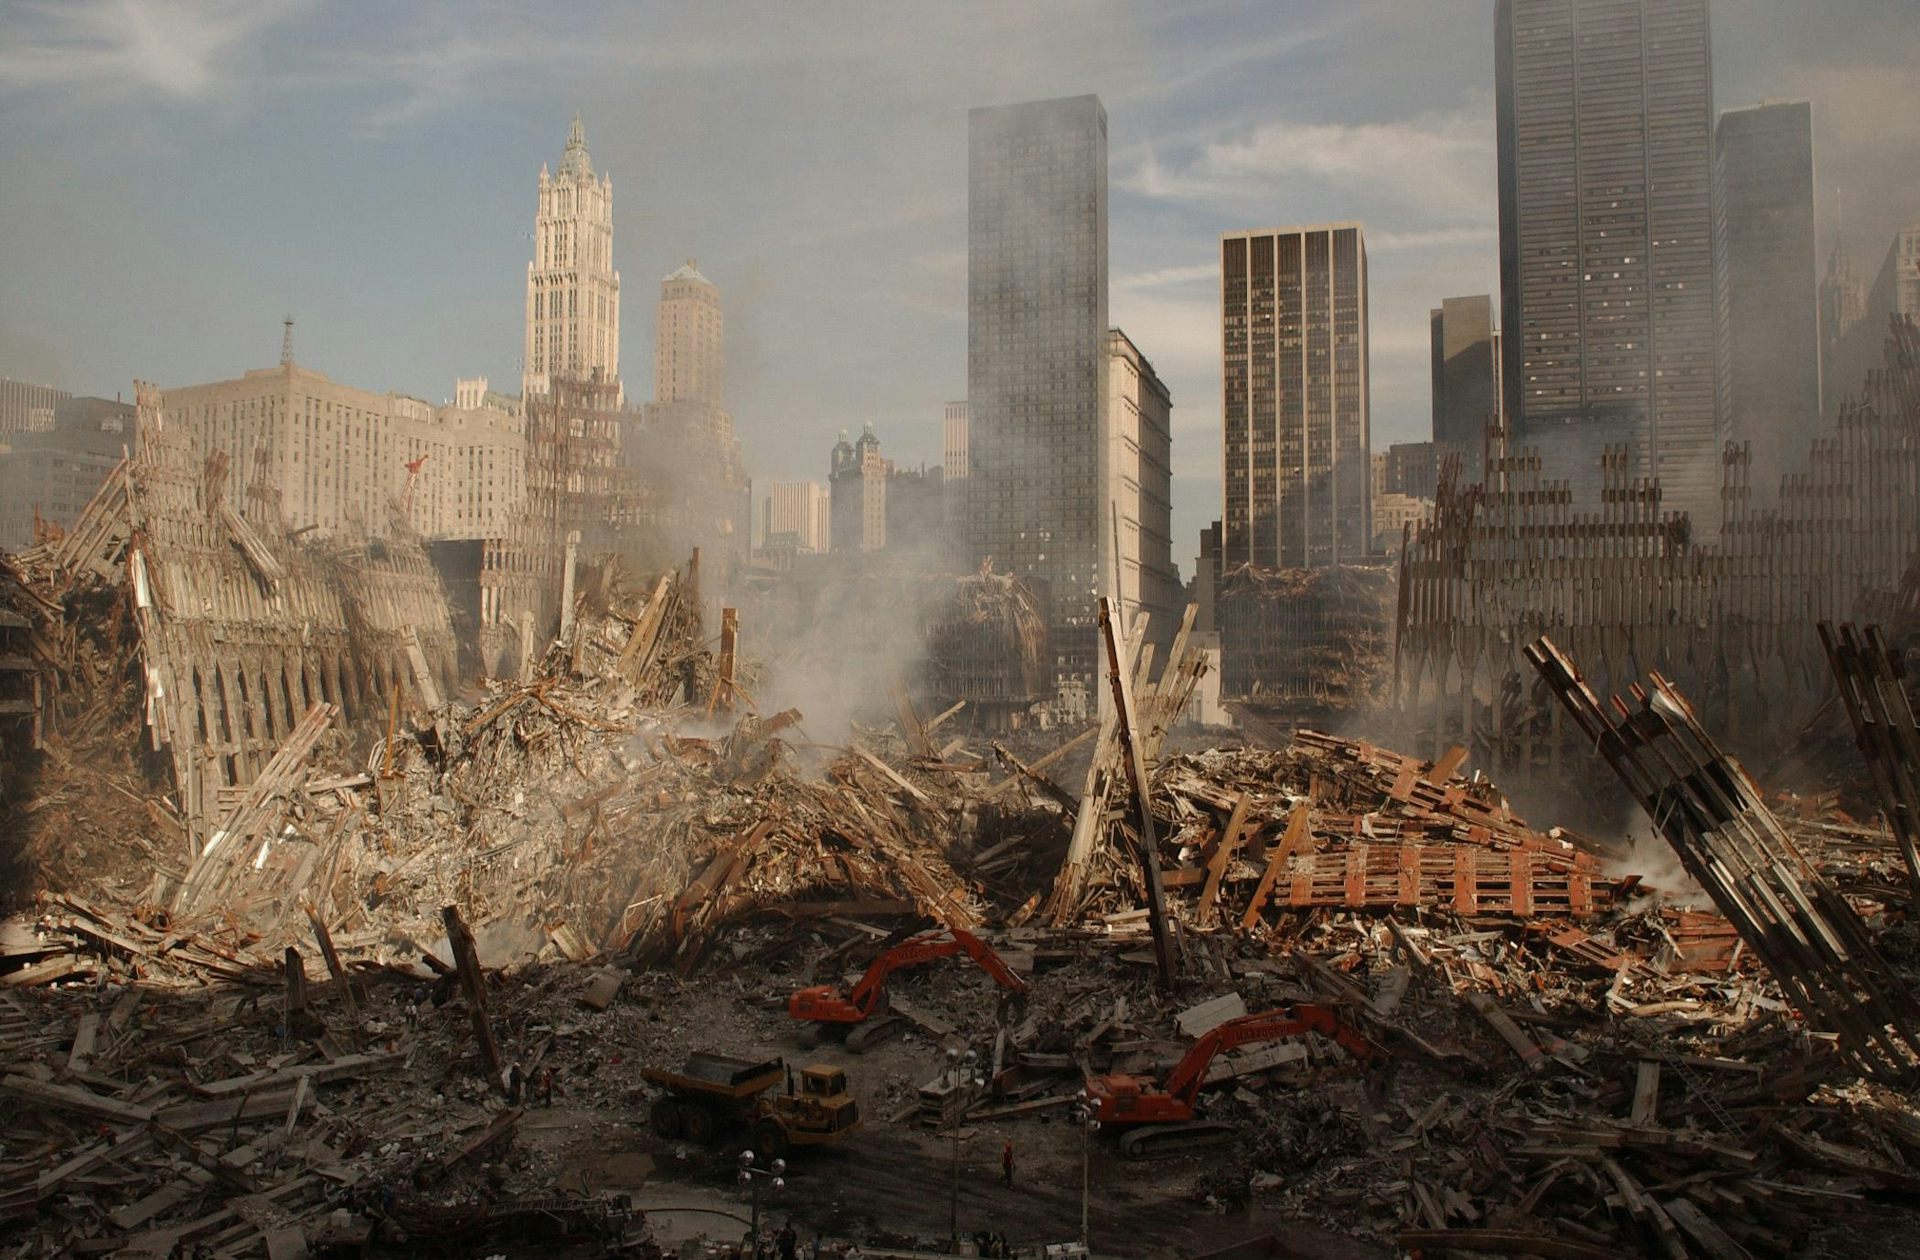  Photographie panoramique de Ground Zero, le site du World Trade Center, le lendemain du 11/9.